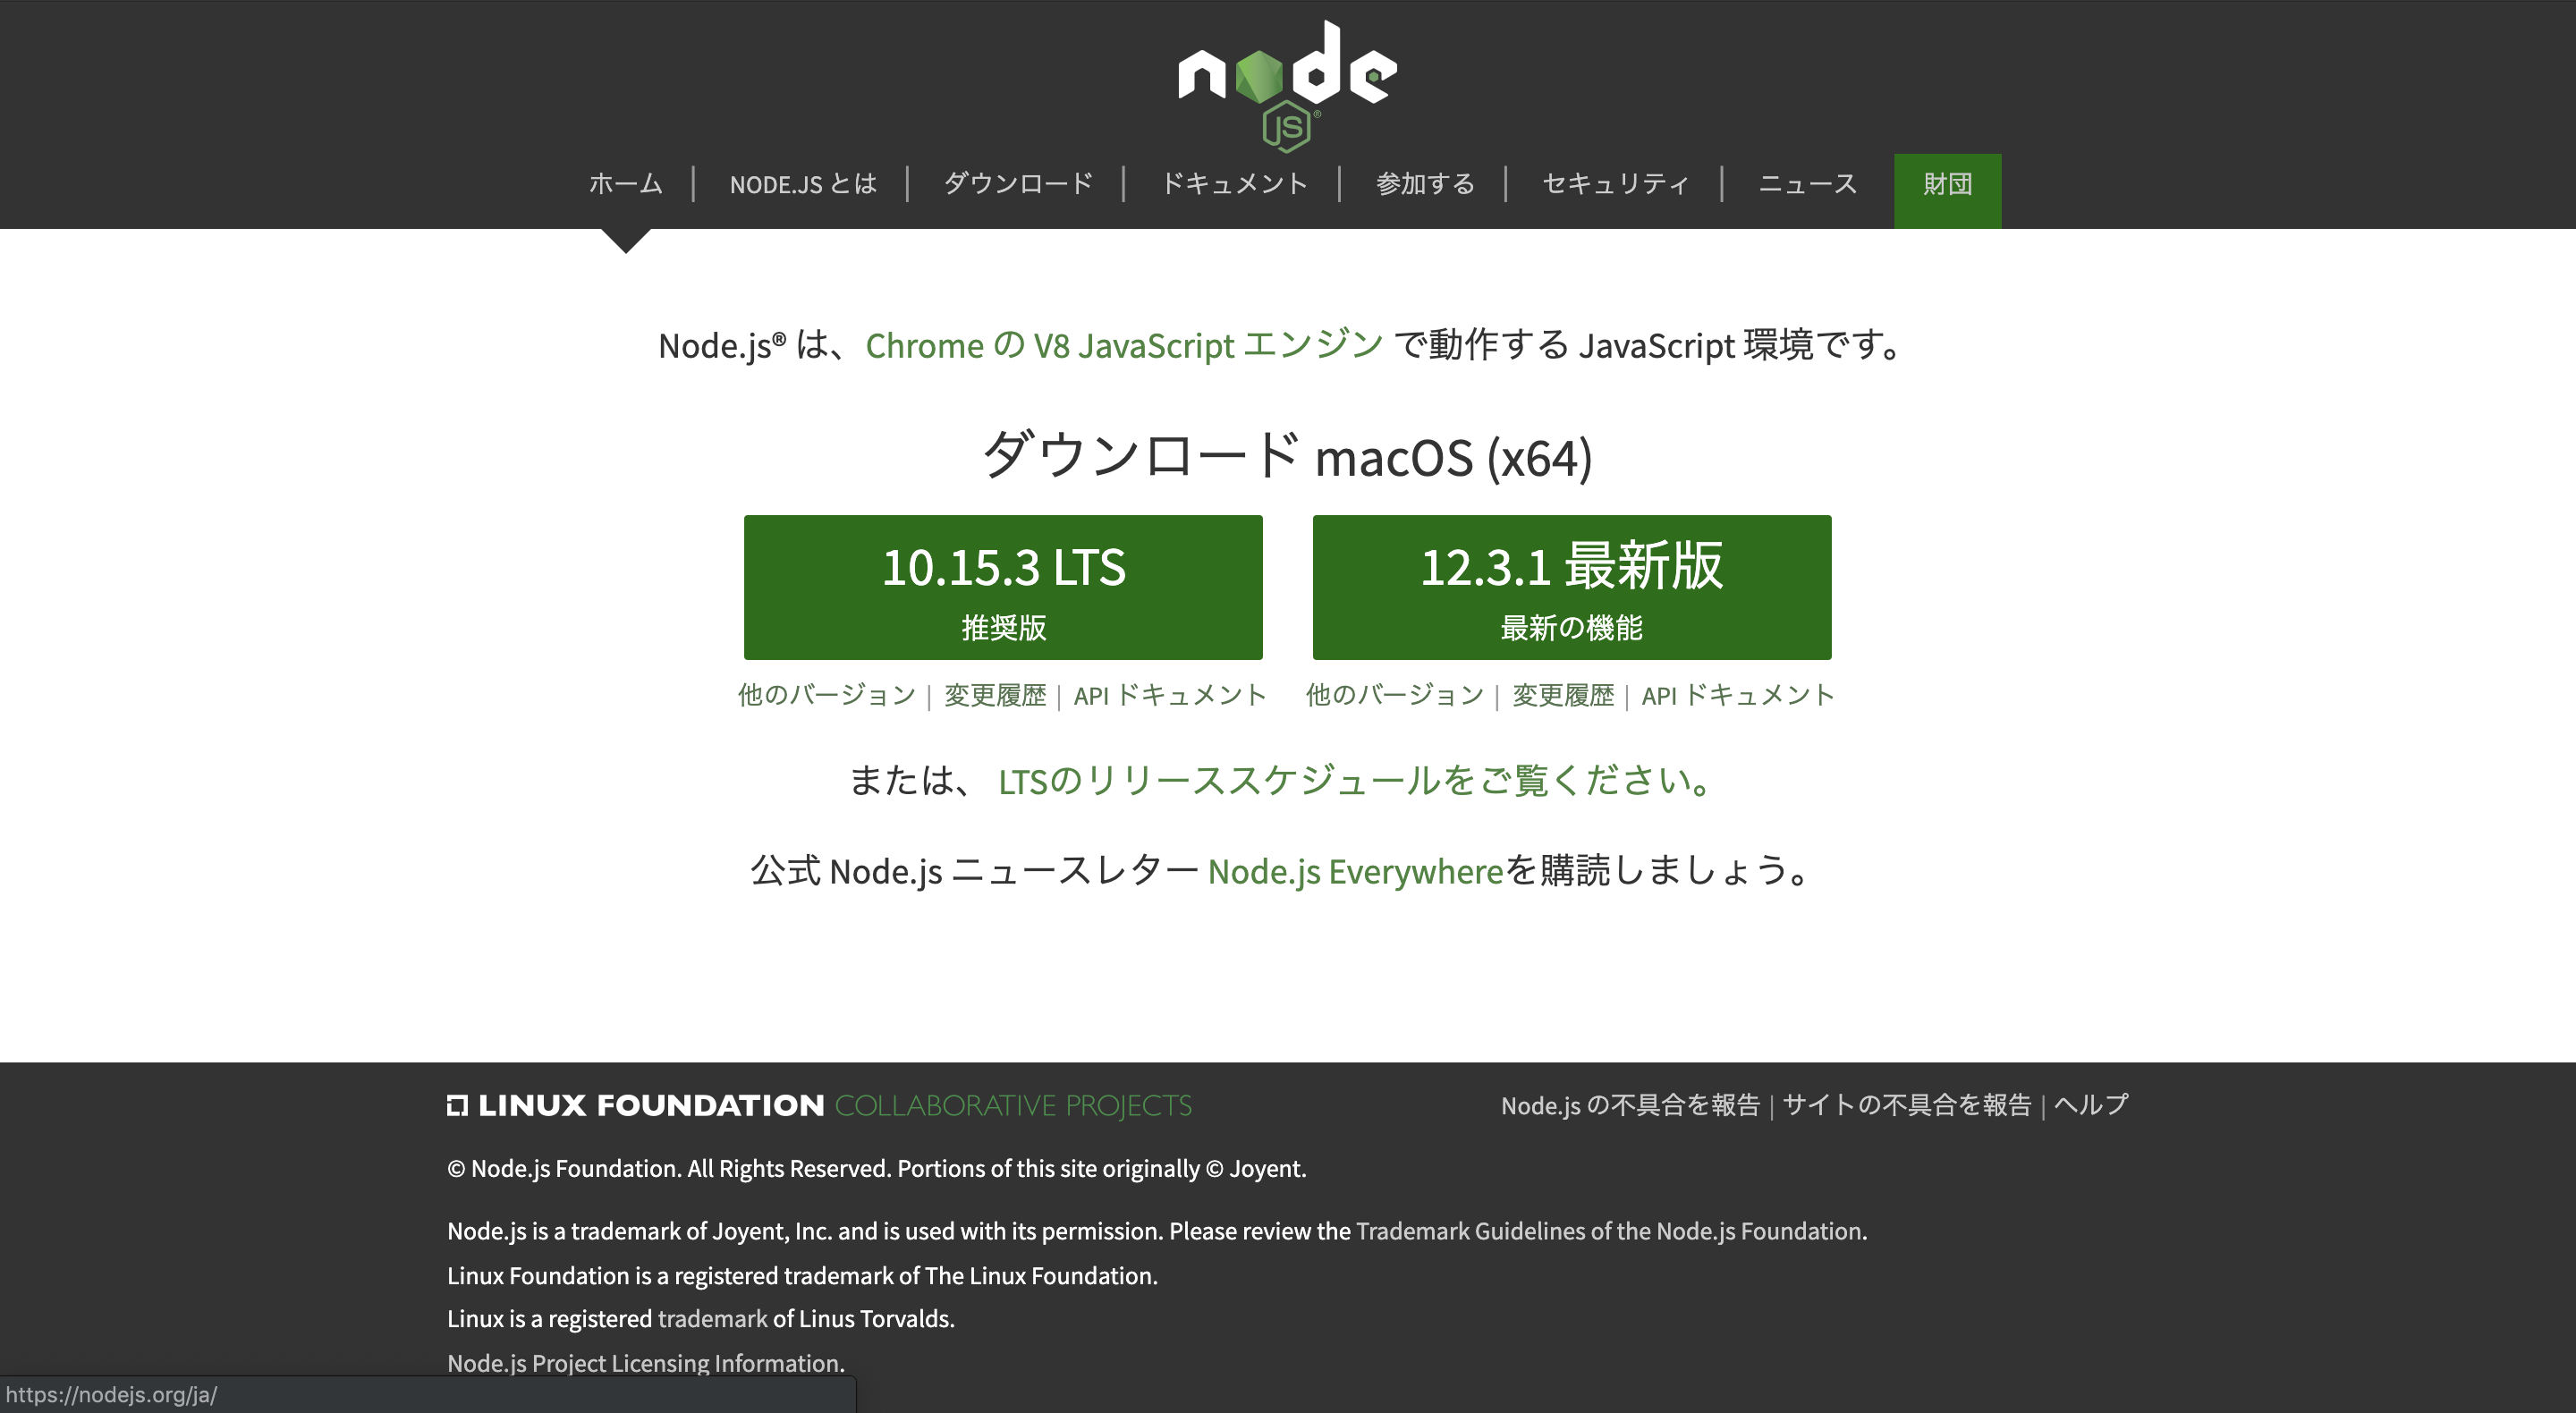 Node.js public site